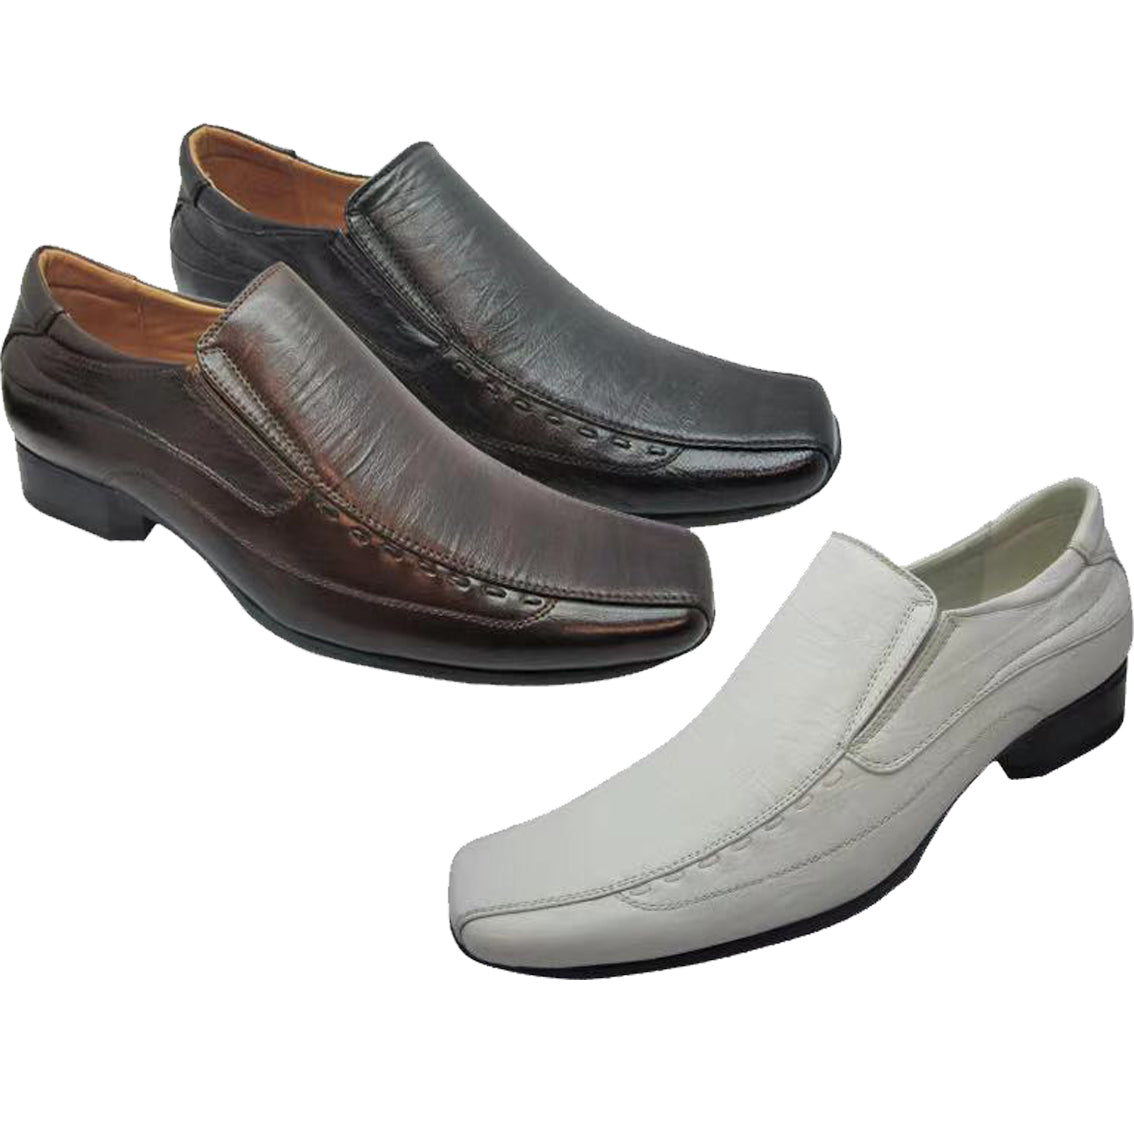 Wholesale Men's SHOES For Men Dress Loafer Calvert NFJR